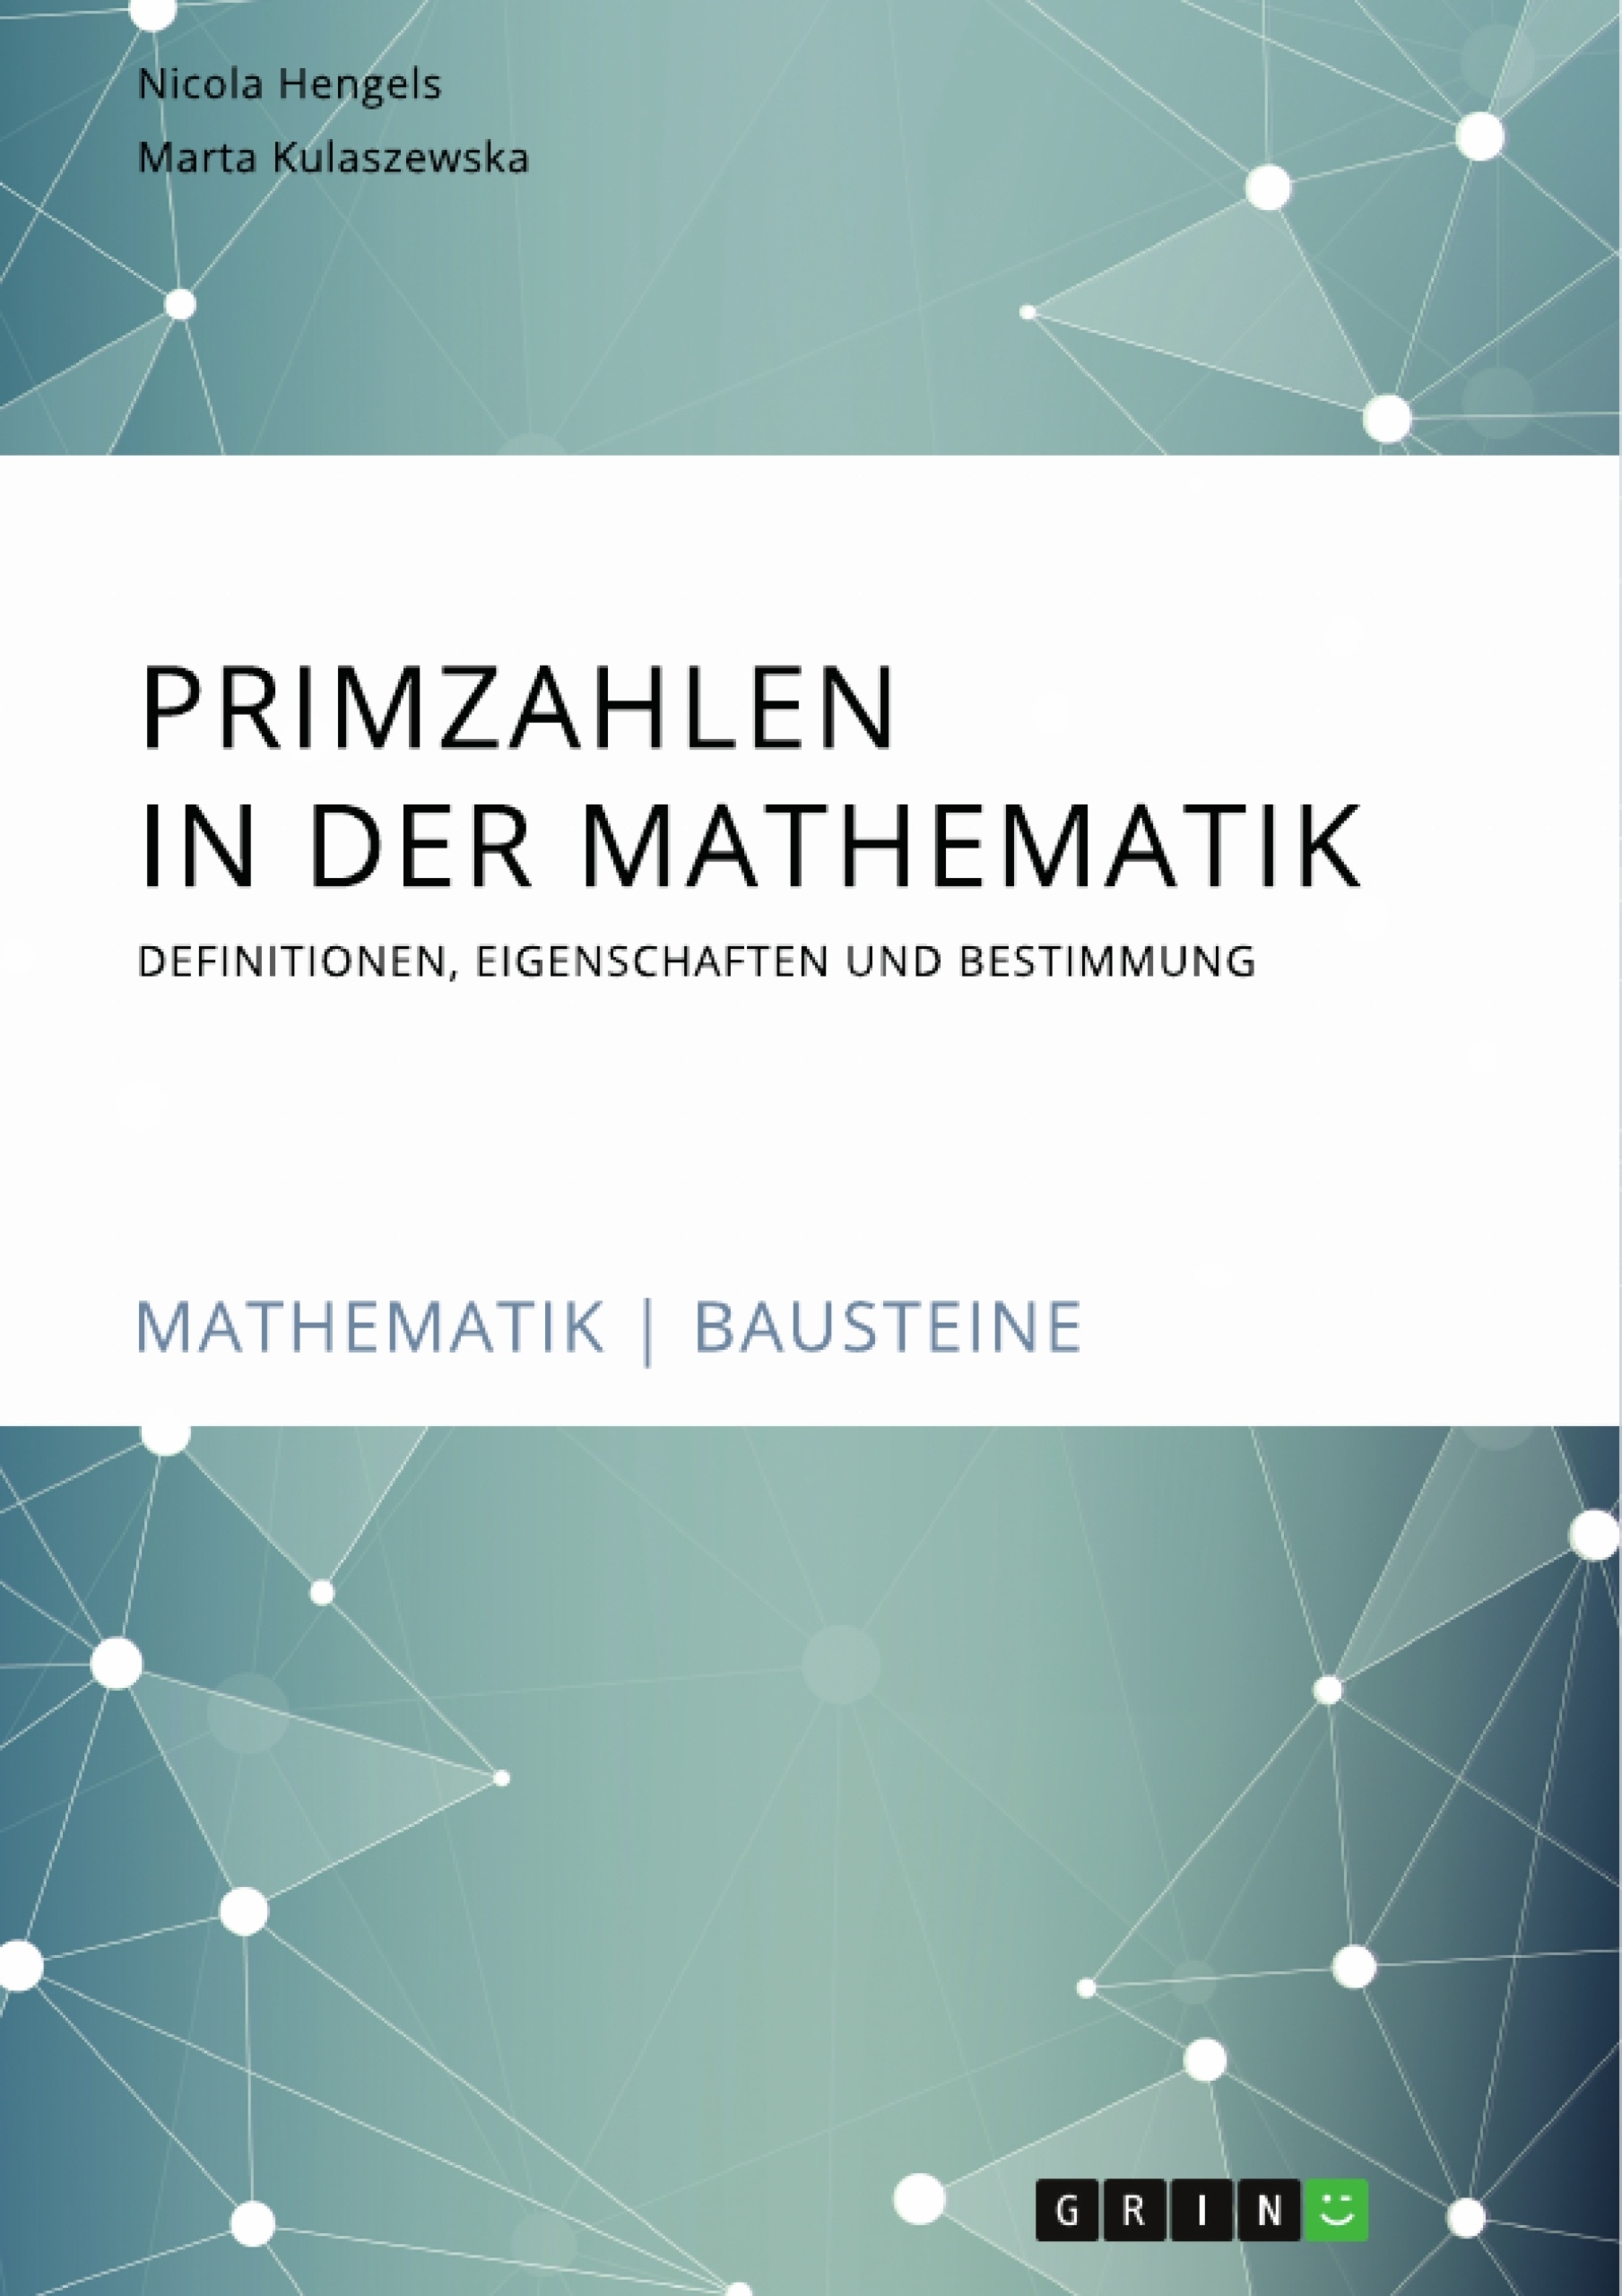 Titel: Primzahlen in der Mathematik. Definitionen, Eigenschaften und Bestimmung